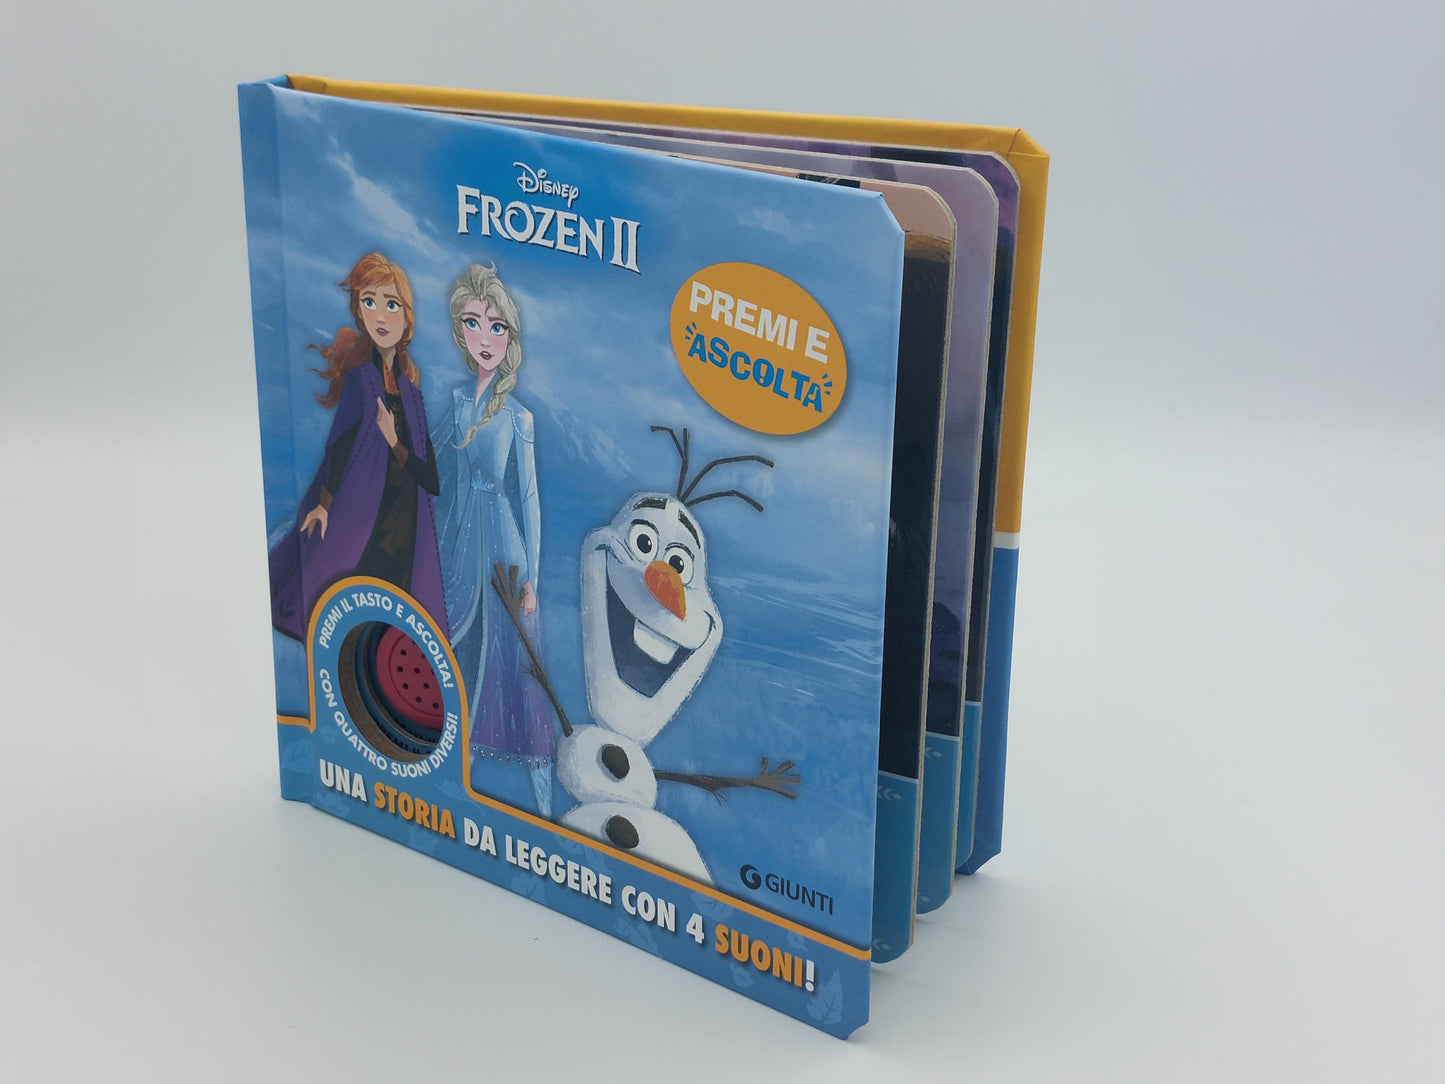 Disney Frozen 2 Premi e ascolta - Una storia da leggere con 4 suoni!. Premi il tasto e ascolta! Con 4 suoni diversi!